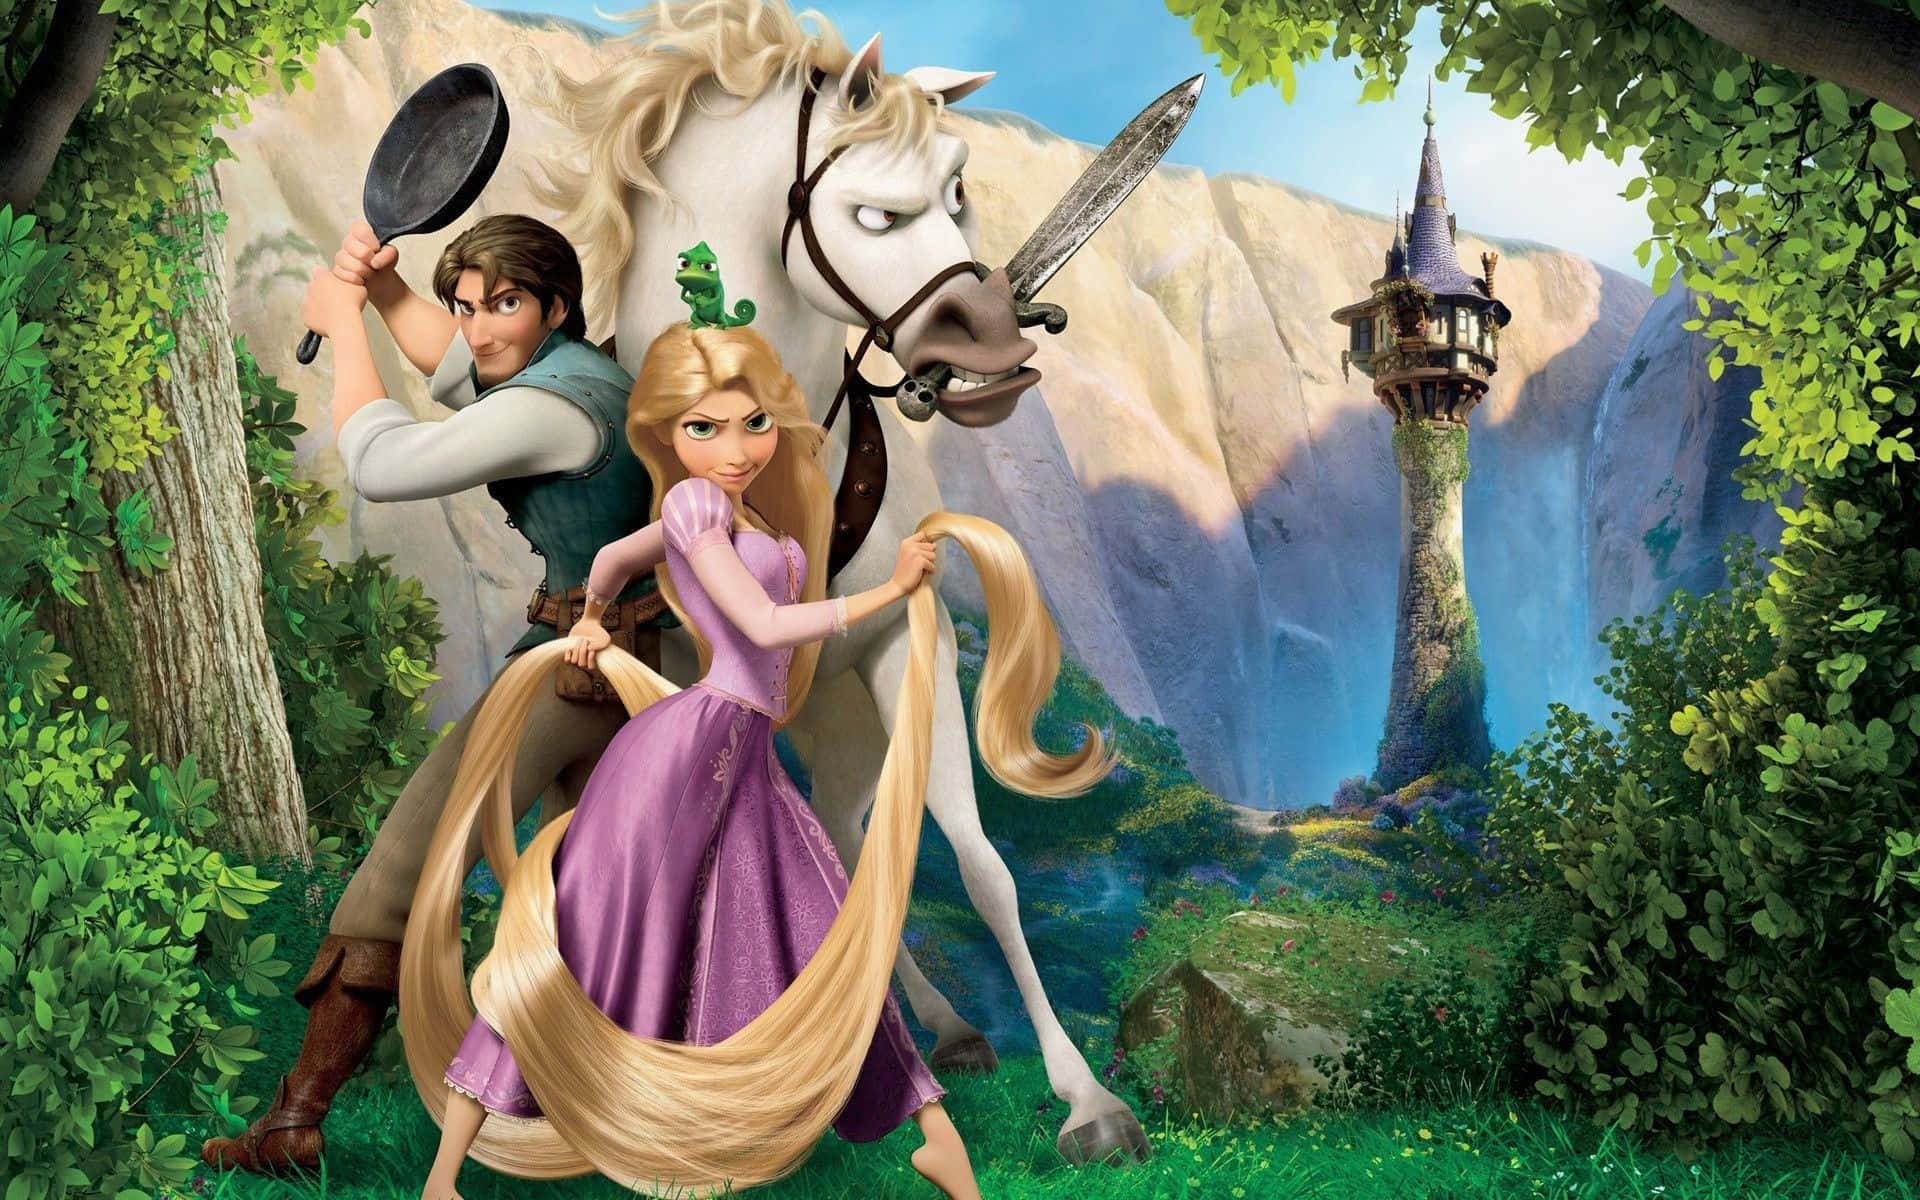 Flynnrider Och Rapunzel, De Två Huvudkaraktärerna I Disney's Tangled, Ger Sig Ut På Äventyr Tillsammans.